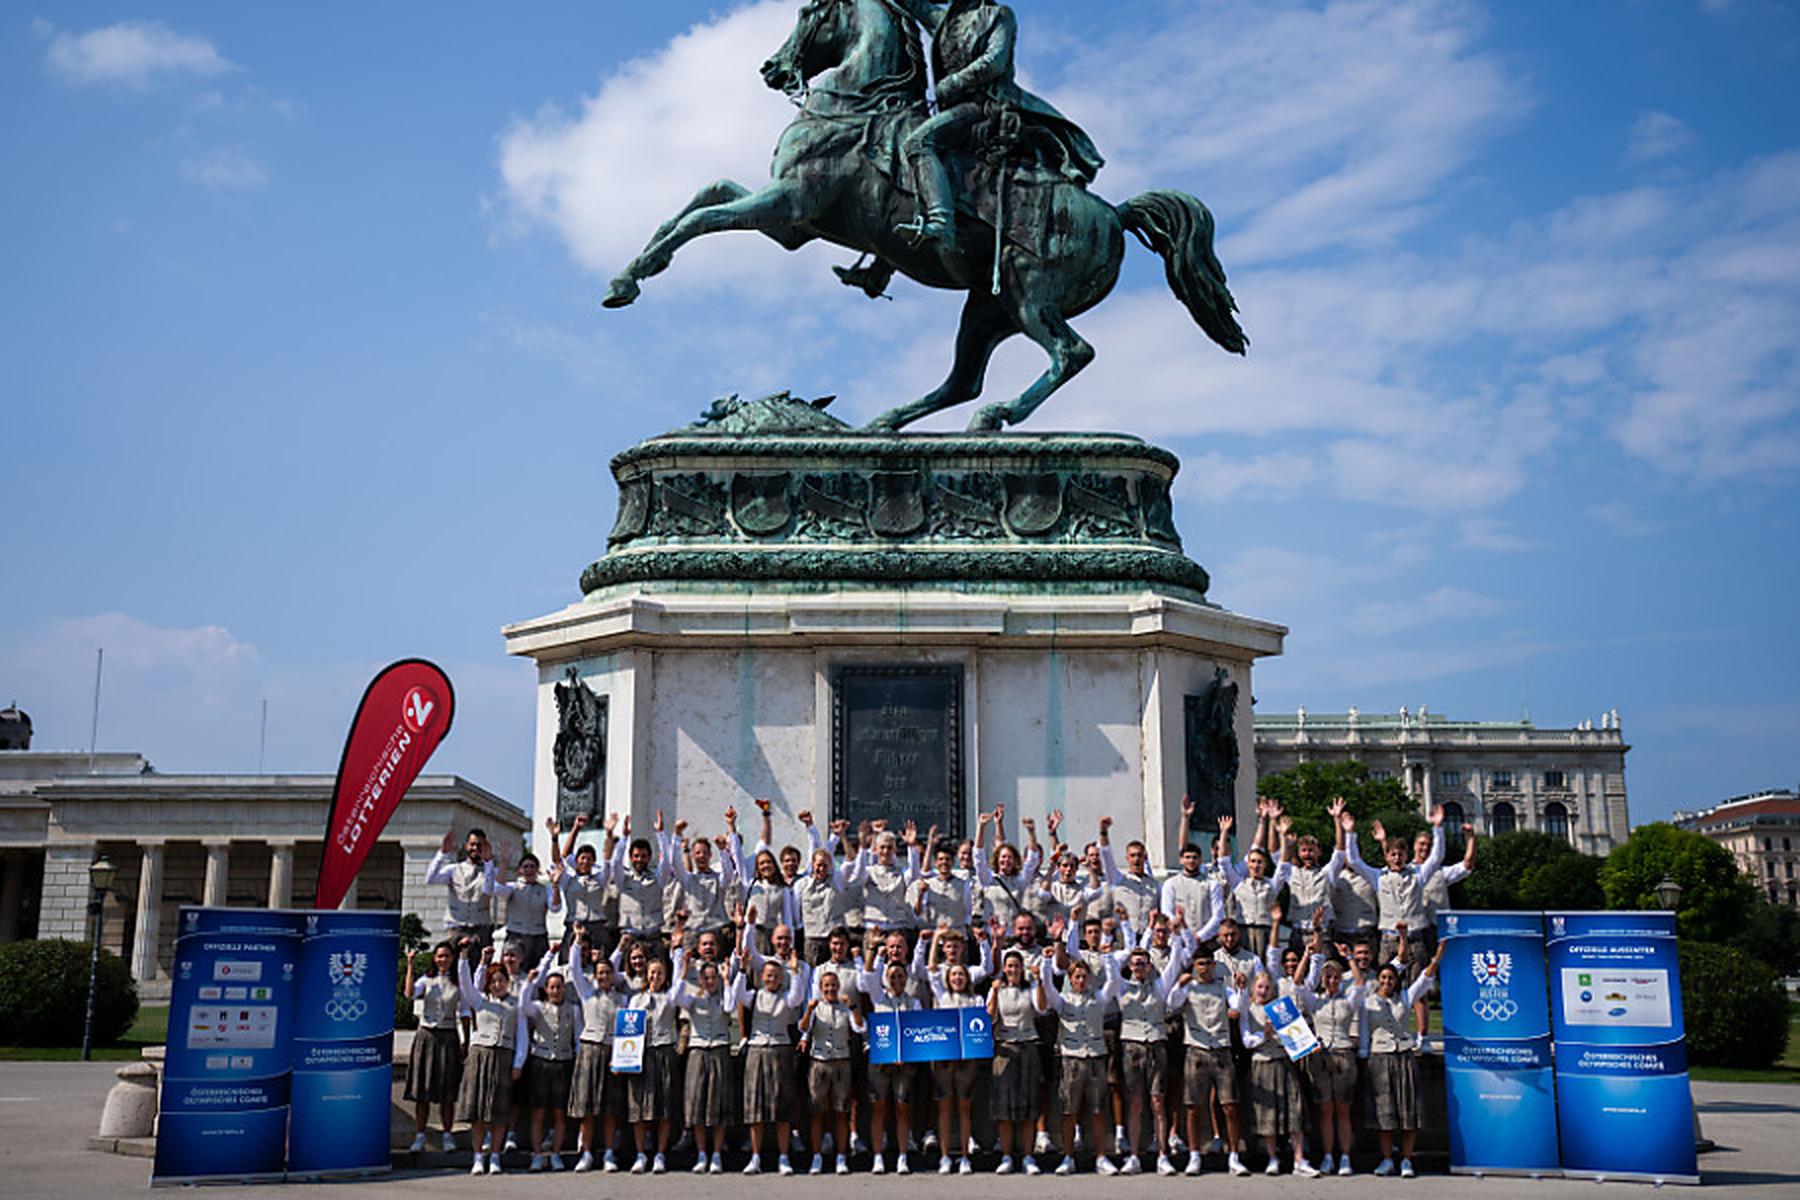 Wien: ÖOC-Team für Paris 2024 feierlich angelobt und verabschiedet